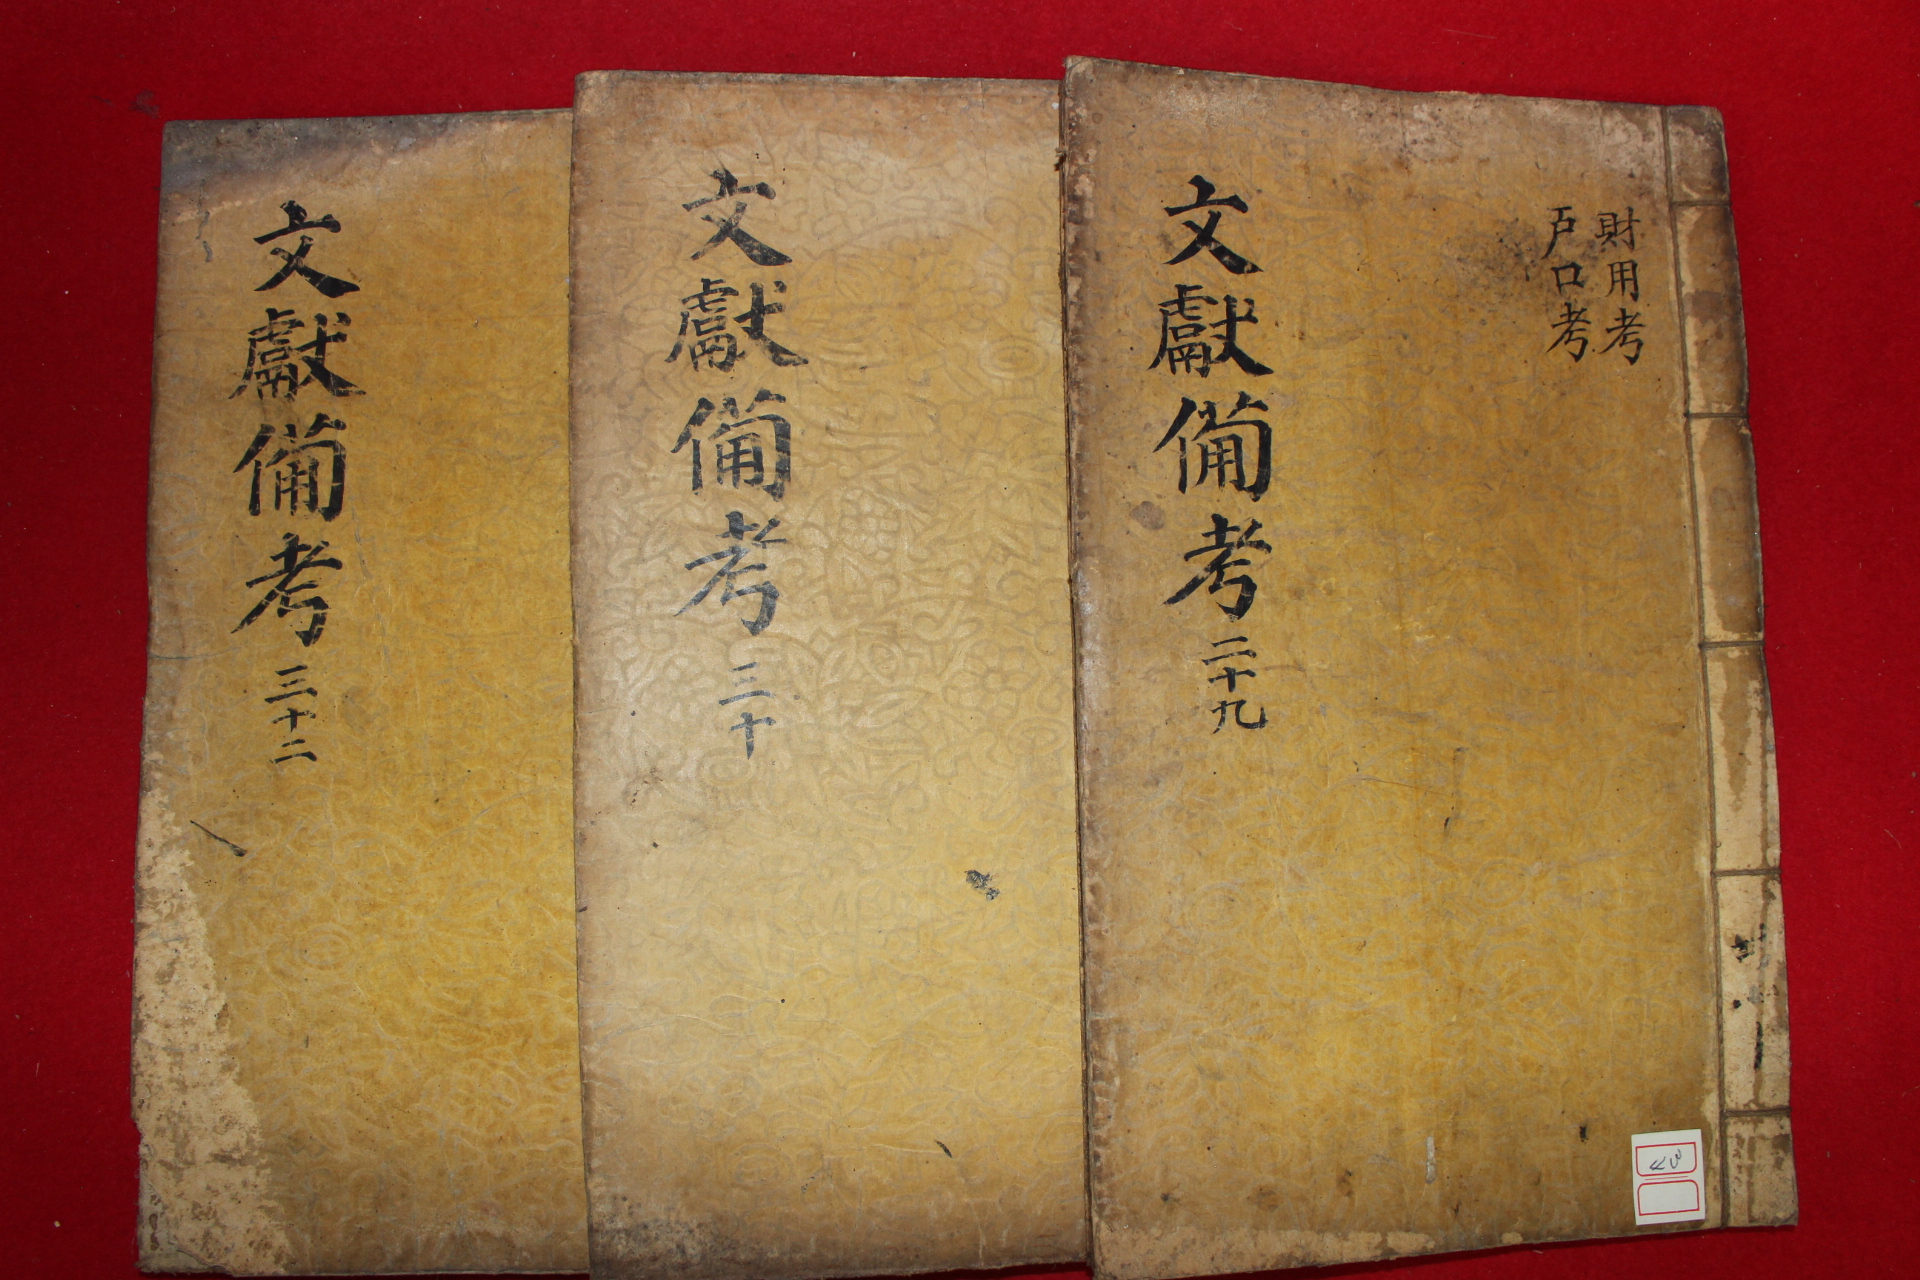 1770년 금속활자본(云閣印書體字) 동국문헌비고(東國文獻備考) 3책